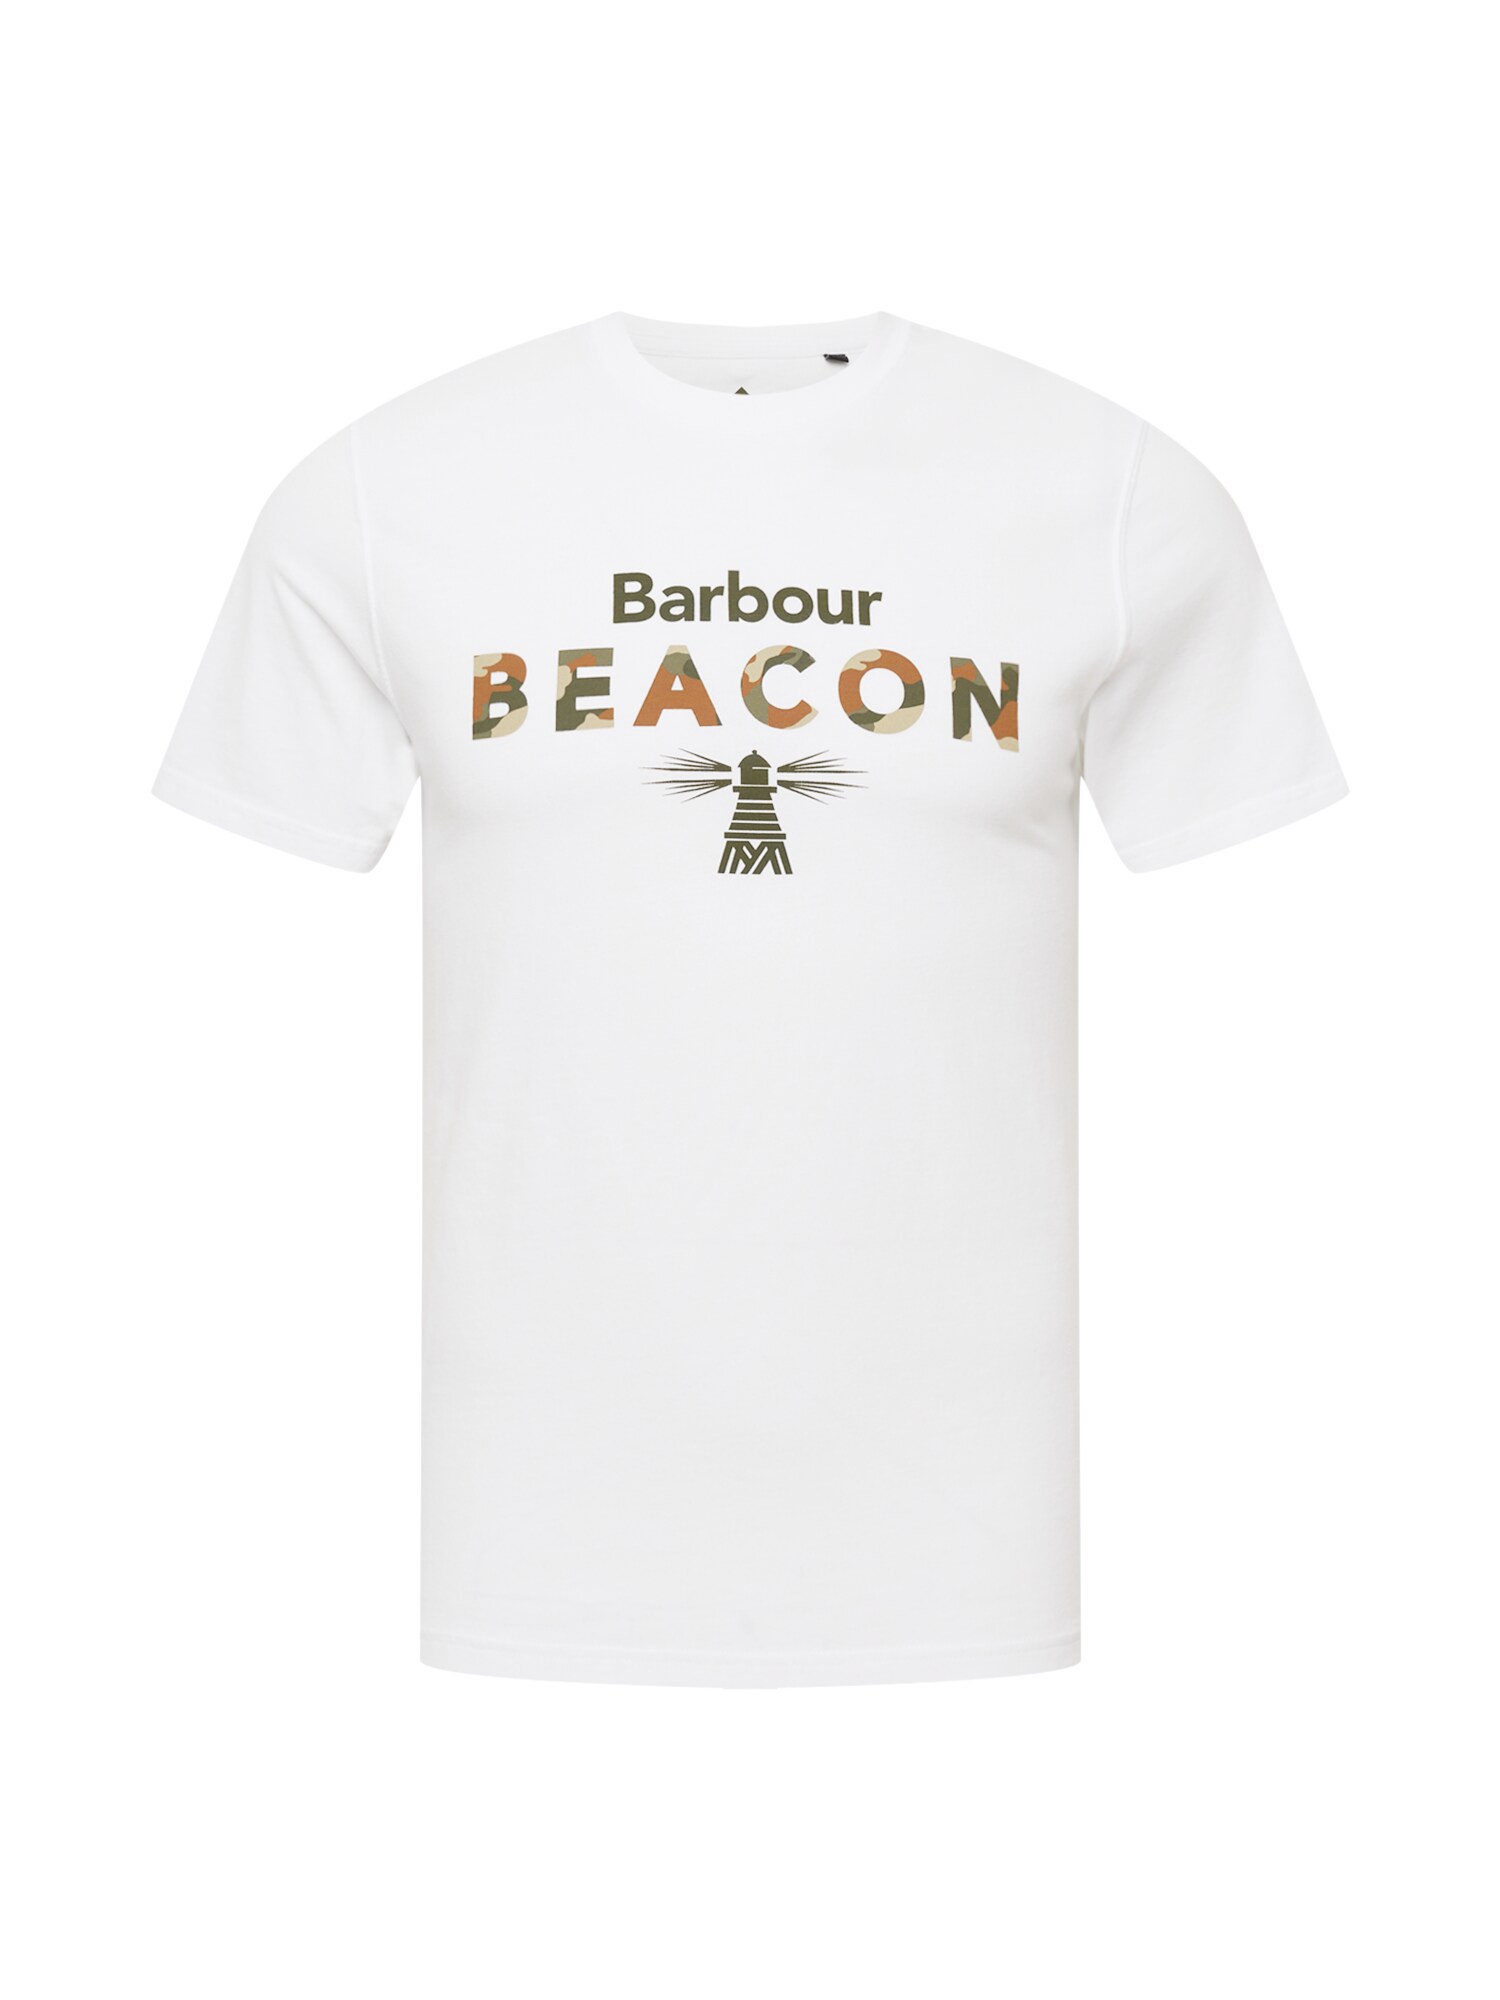 Barbour Beacon Marškinėliai ruda / rusvai žalia / balta